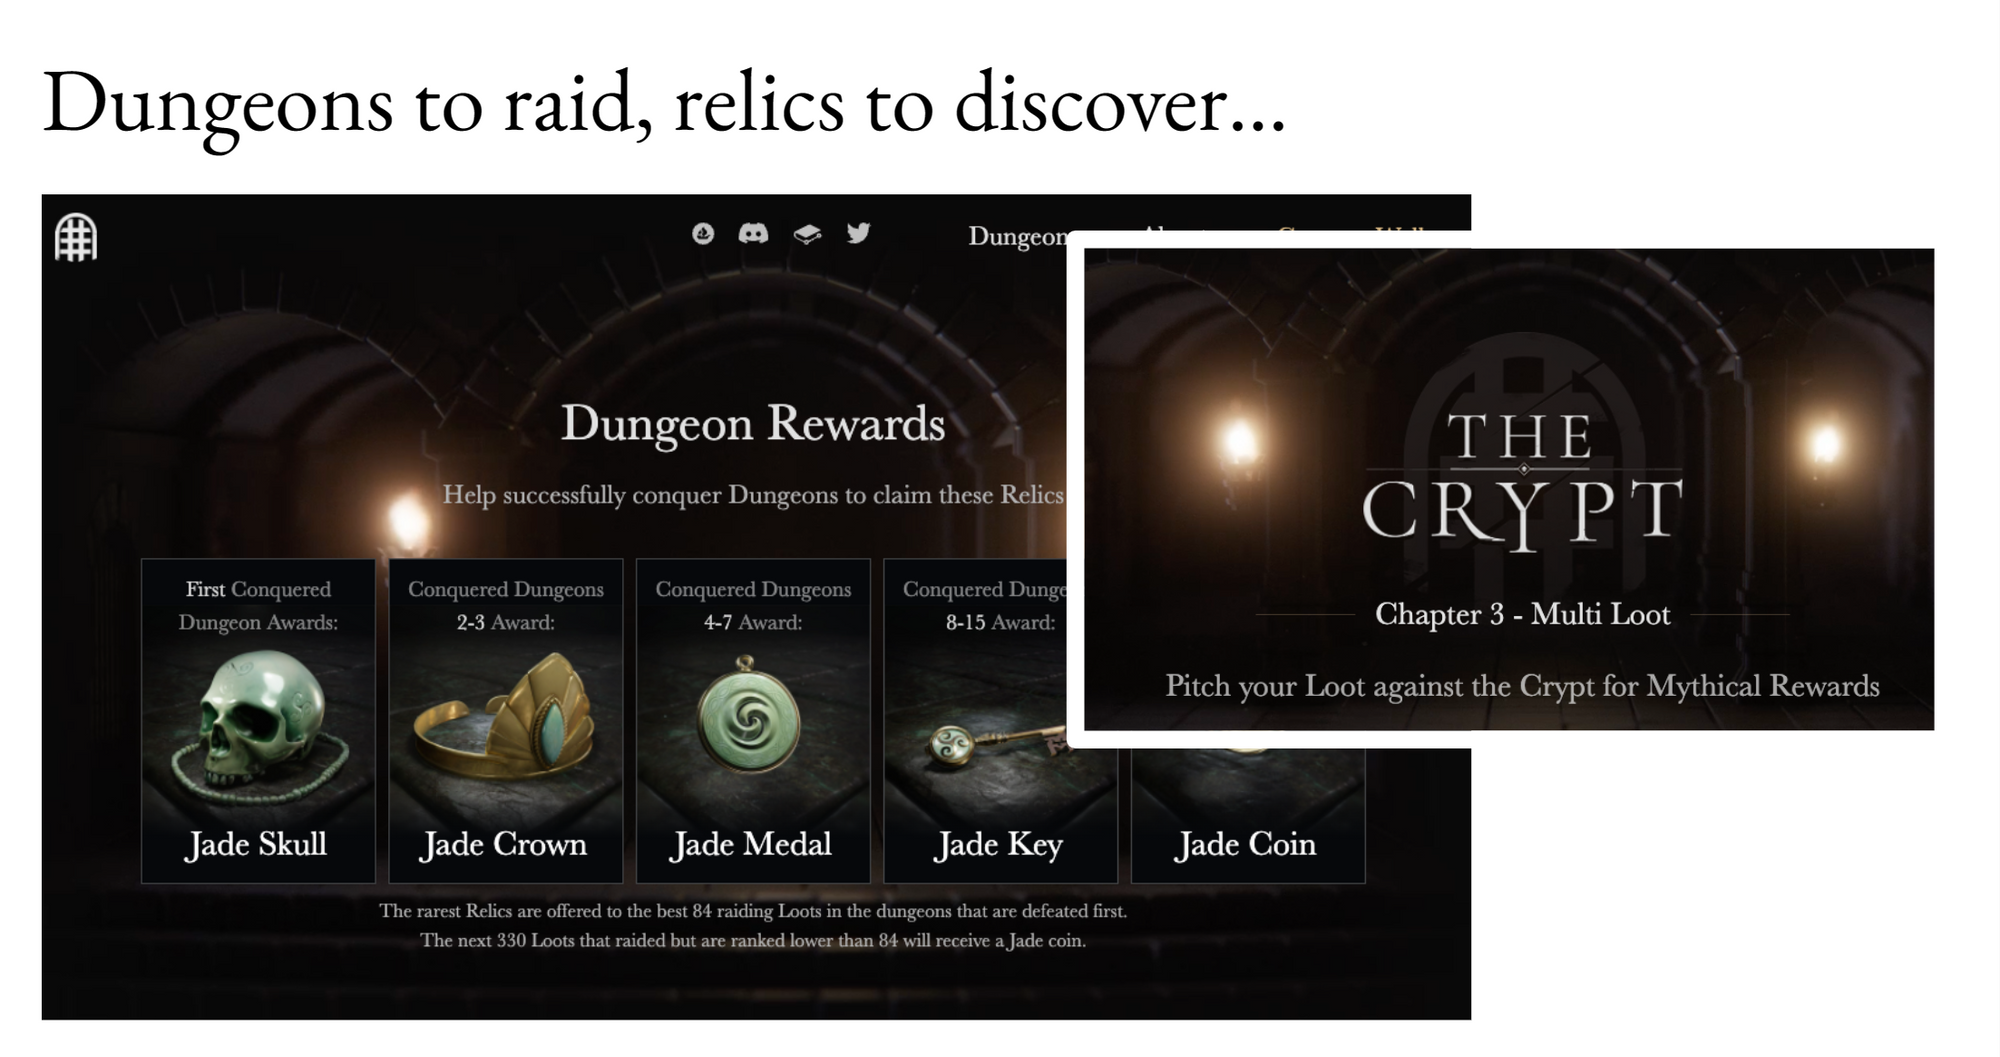 The Crypt游戏中的探险奖励